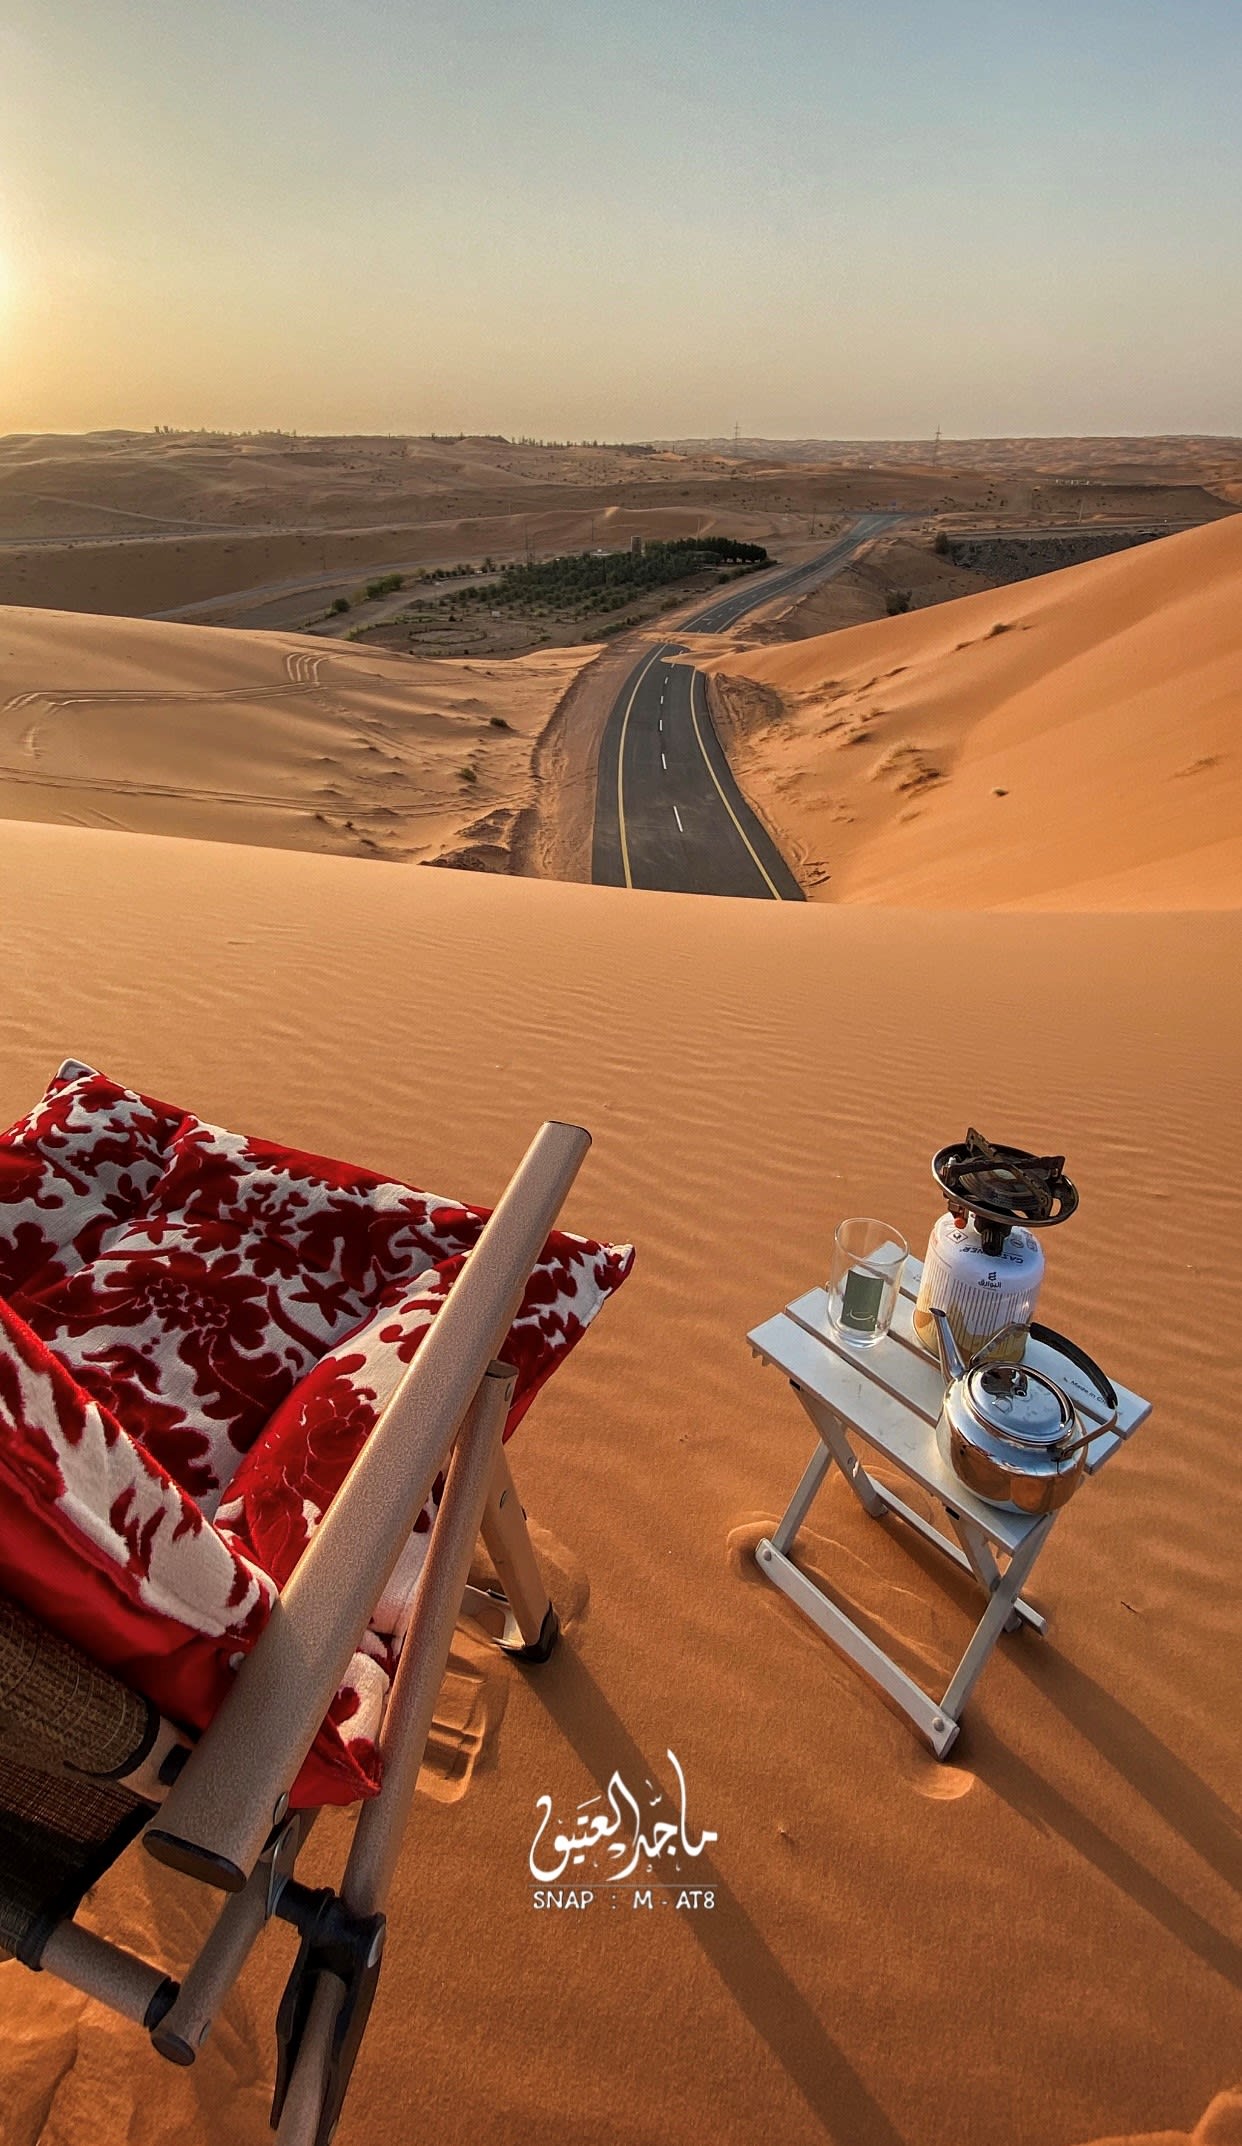 في السعودية.. مصور يوثق نزهة ساحرة في نهاية طريق مغطى بالرمال